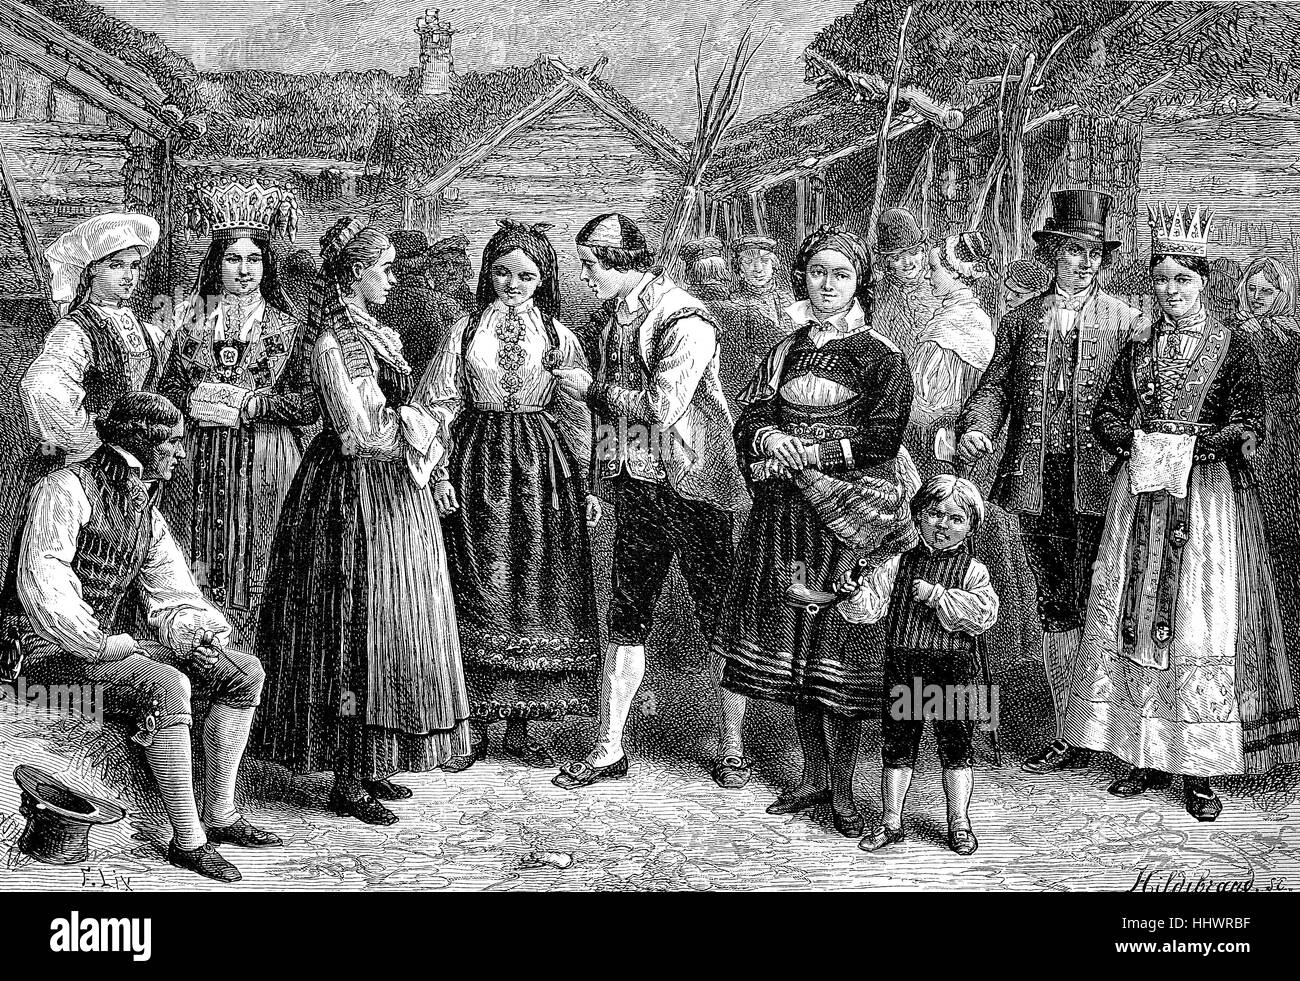 Un gruppo in norvegese costumi folcloristici, Norvegia, immagine storica o illustrazione, pubblicato 1890, digitale migliorata Foto Stock